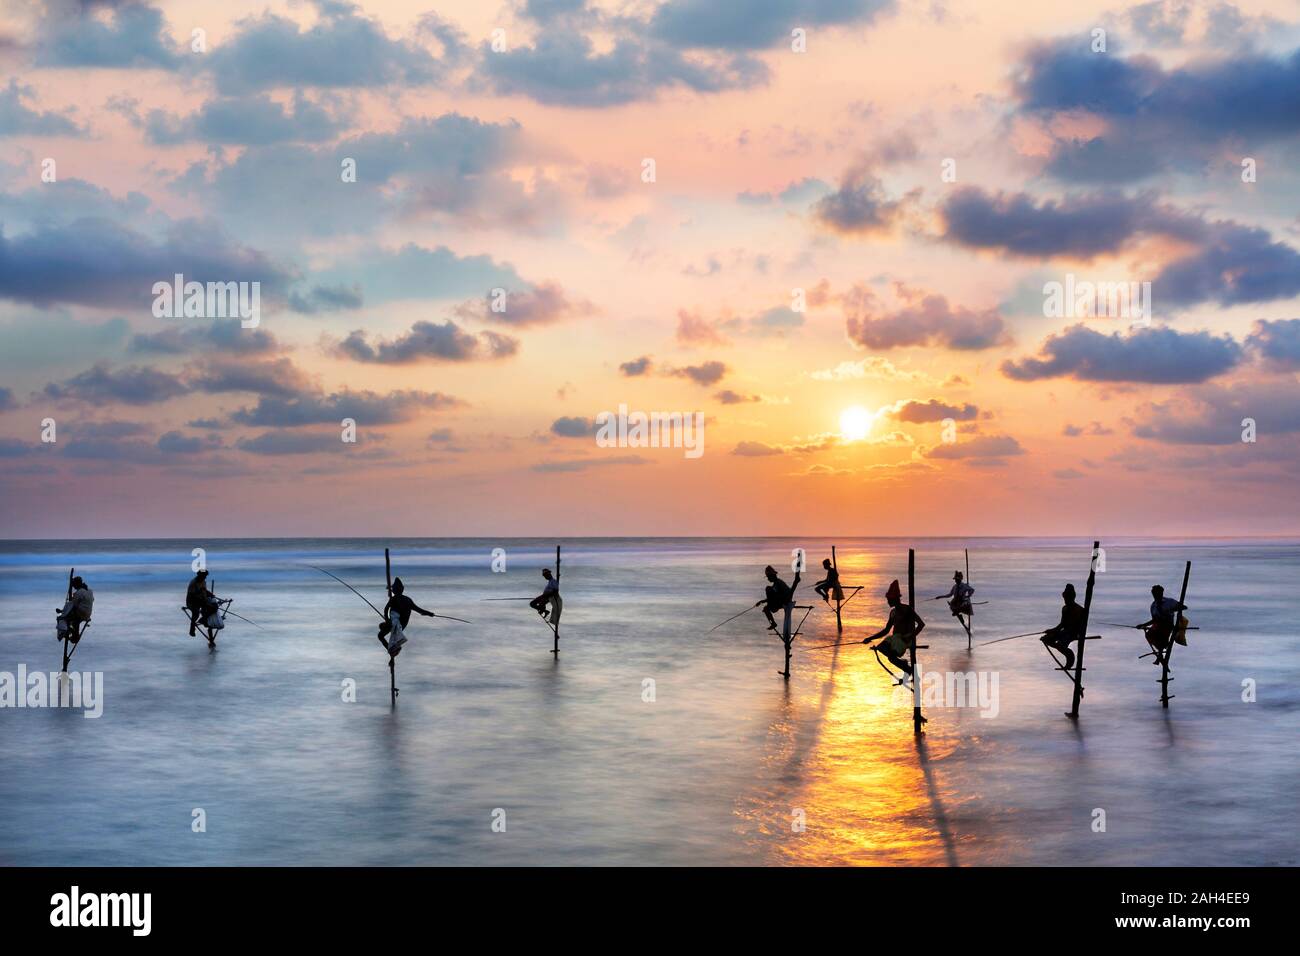 Les pêcheurs sur les échasses en silhouette au coucher du soleil au Sri Lanka. Banque D'Images